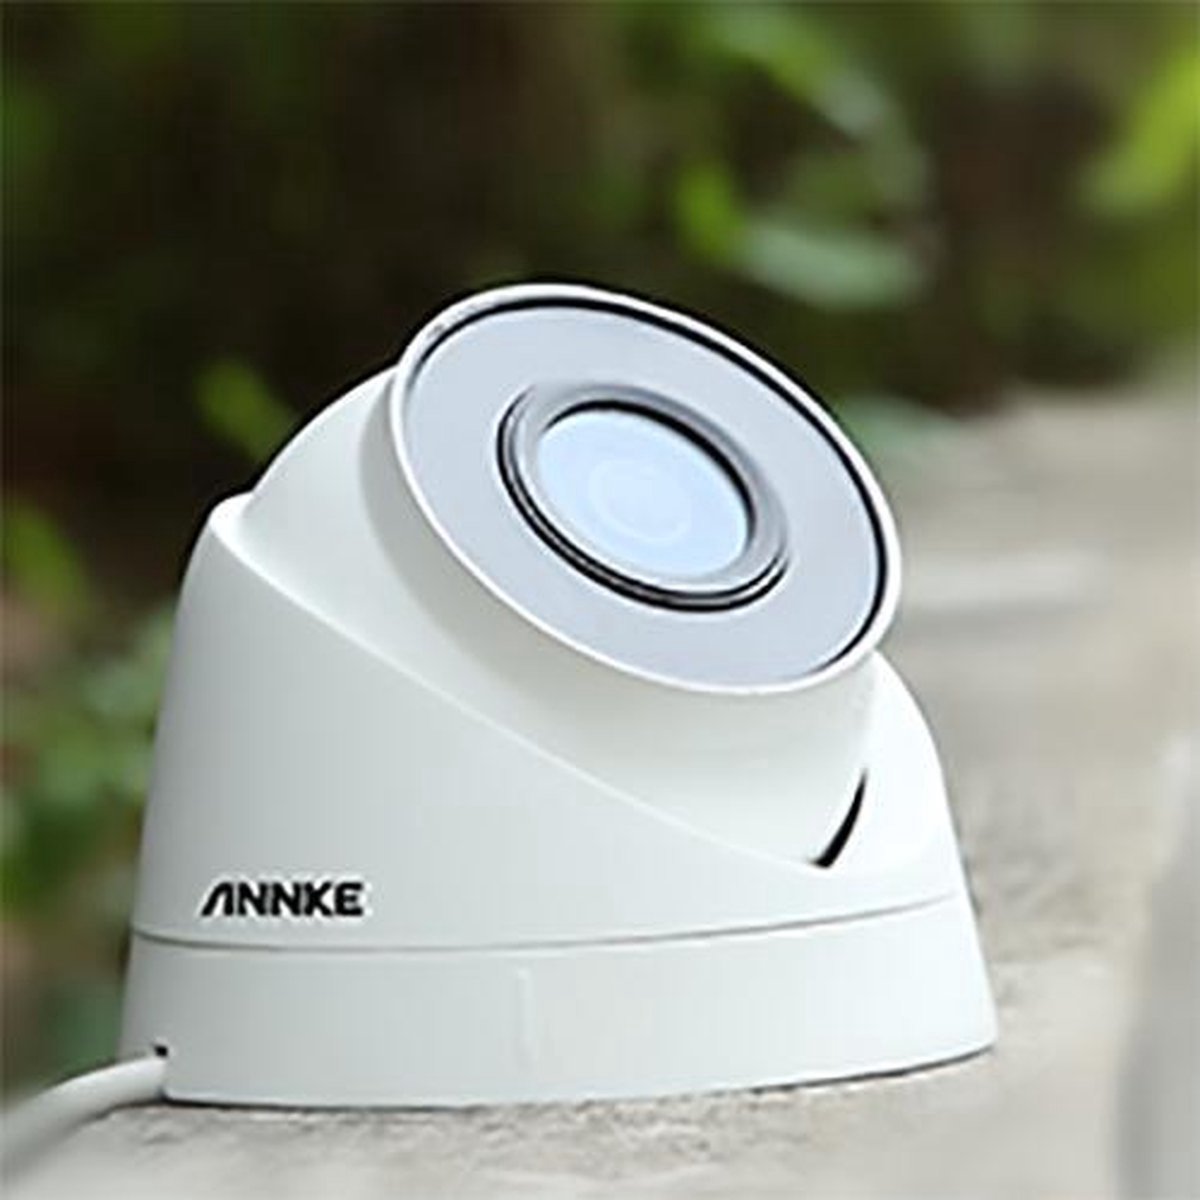 Ariko Système de vidéosurveillance Annke Camera, 4 caméras de sécurité 3 MP blanches de haute qualité, vision nocturne 25 mètres, visionnage d'images enregistrées et en direct en ligne, y compris un disque dur de 1 To – Helpdesk néerlandais